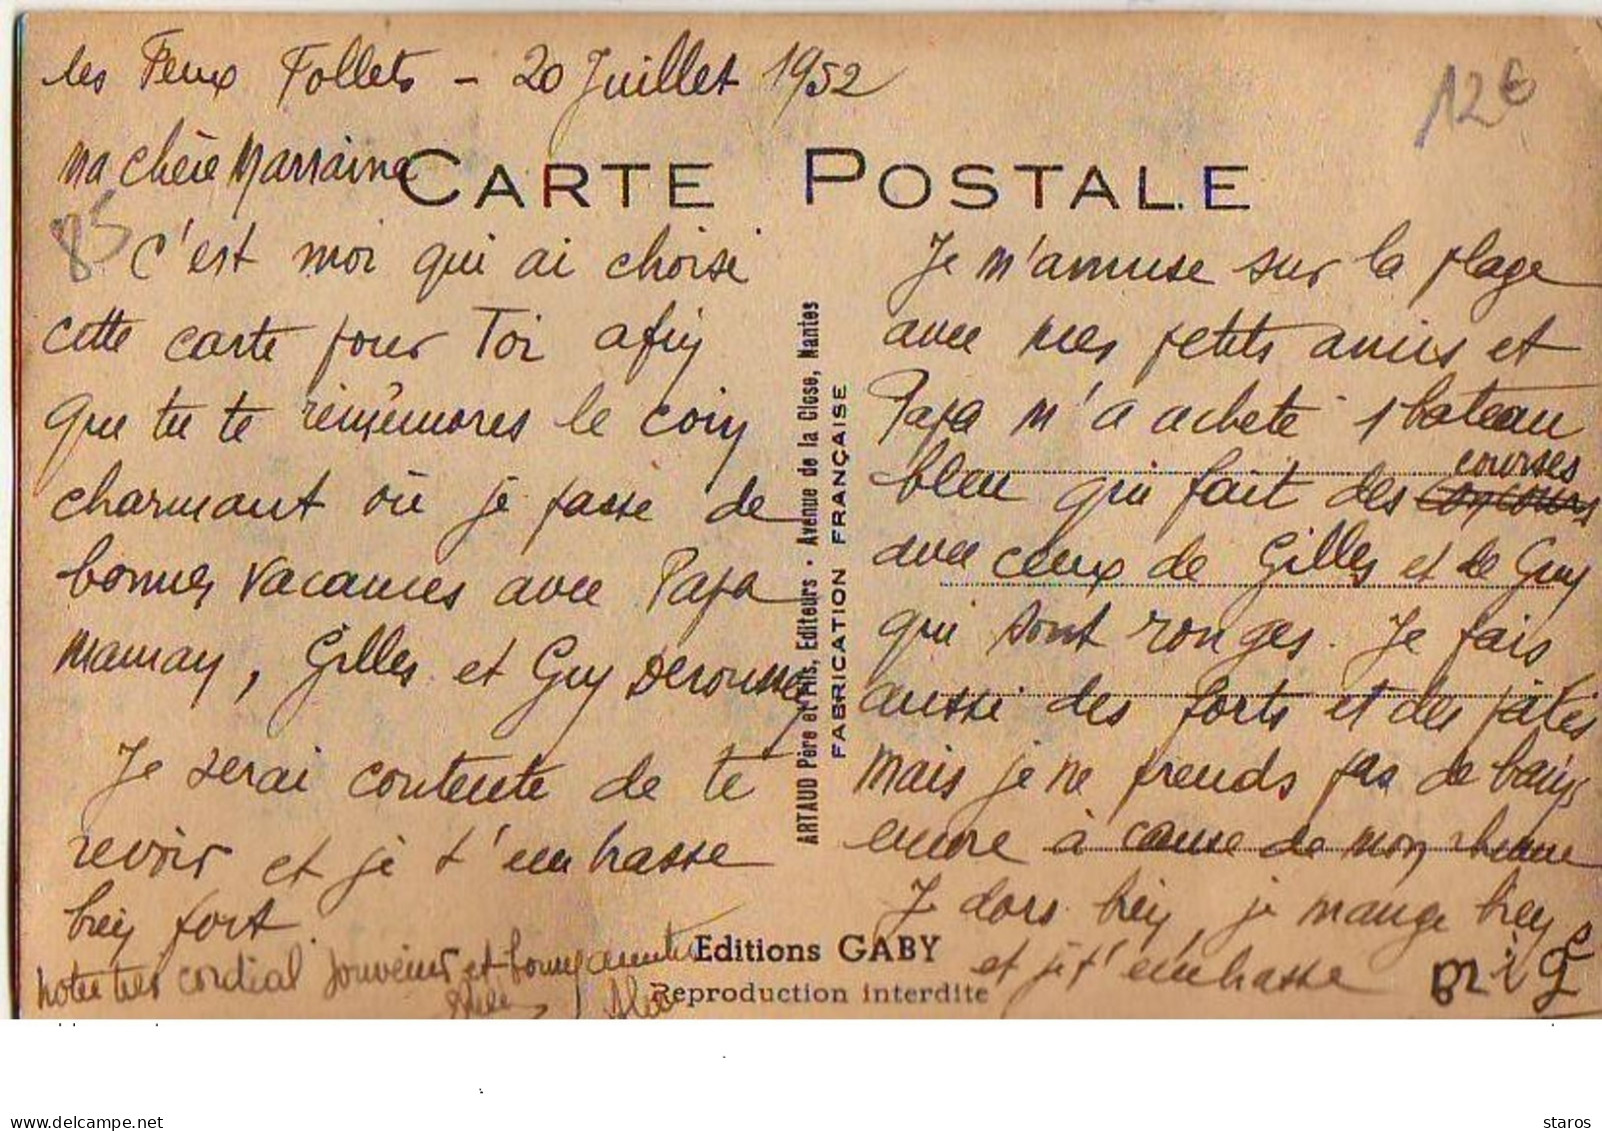 Carte à Système - Meilleur Souvenir Dans La Boite Aux Lettres Vous Verrez NOIRMOUTIER - Noirmoutier